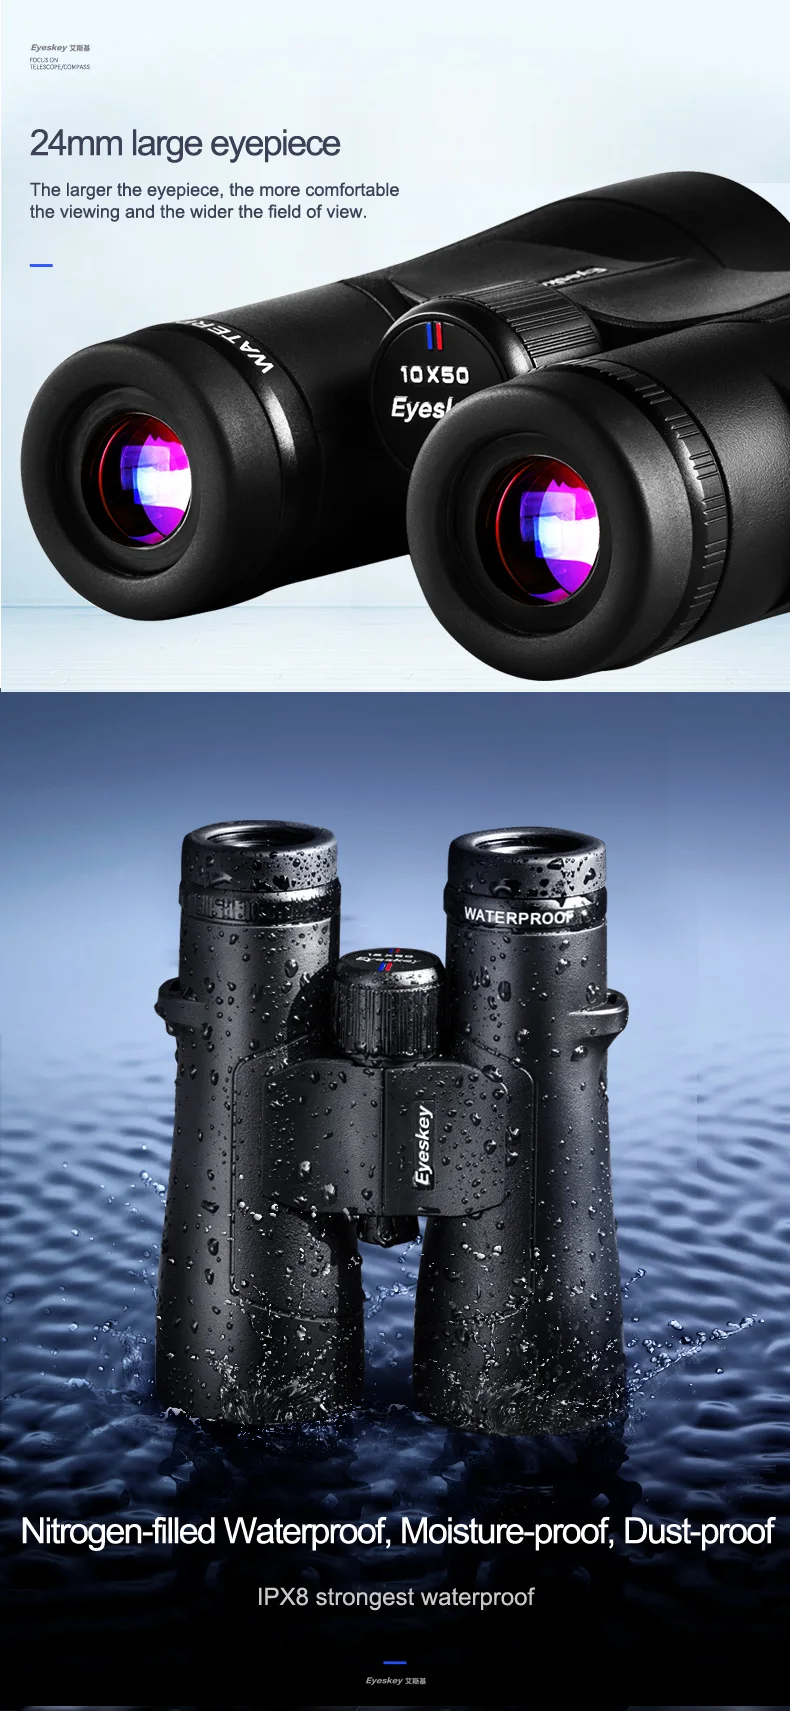 Eyeskey ED 10x50 Бинокль lll ночного видения водонепроницаемый супер-Мульти покрытие Bak4 призма оптика Высокая мощность телескоп для охоты